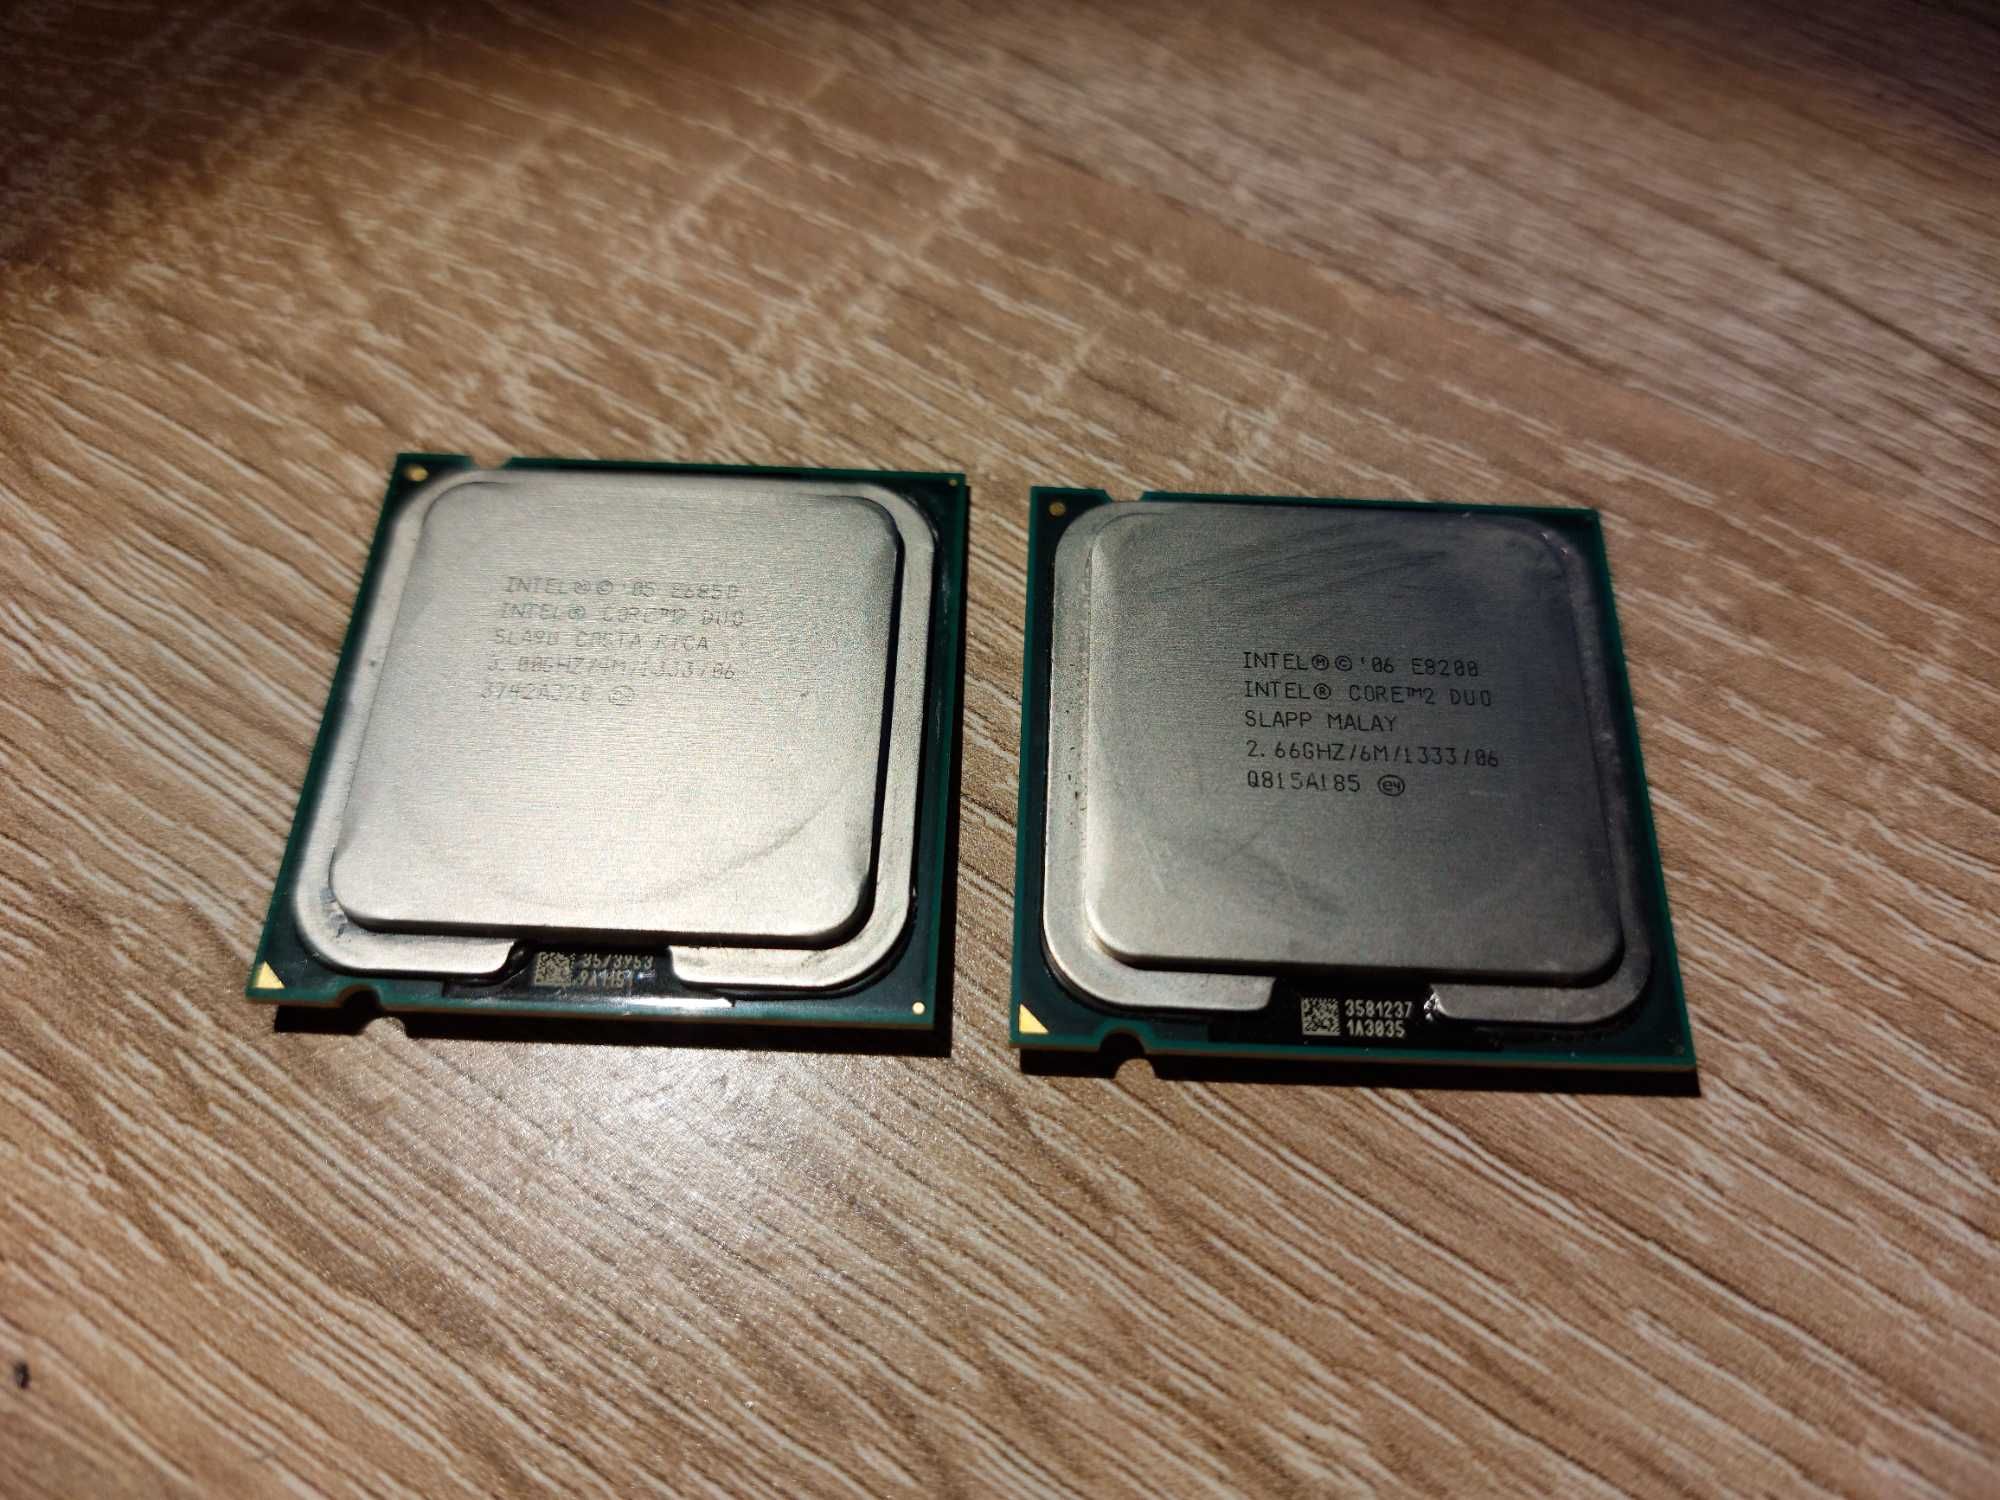 Zestaw części komputerowych - procesor, RAM, zasilacz, chłodzenie, itp